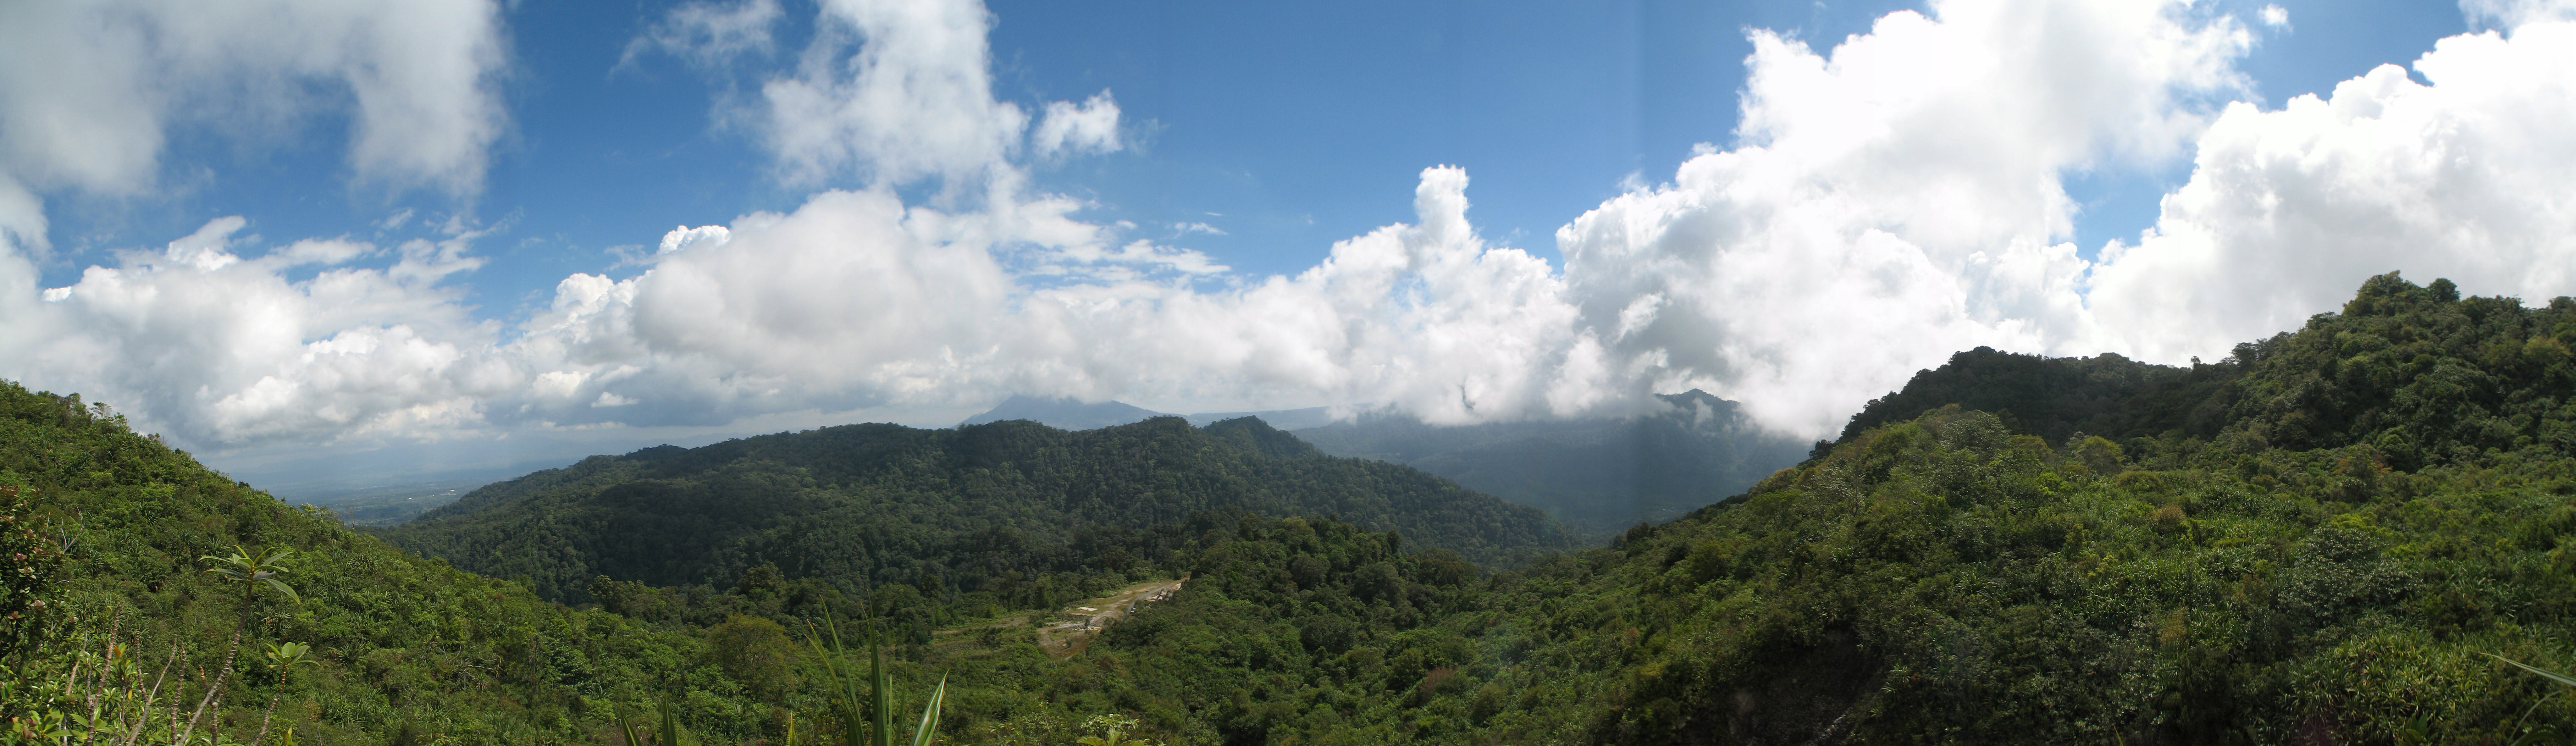 Sumatran Mountains